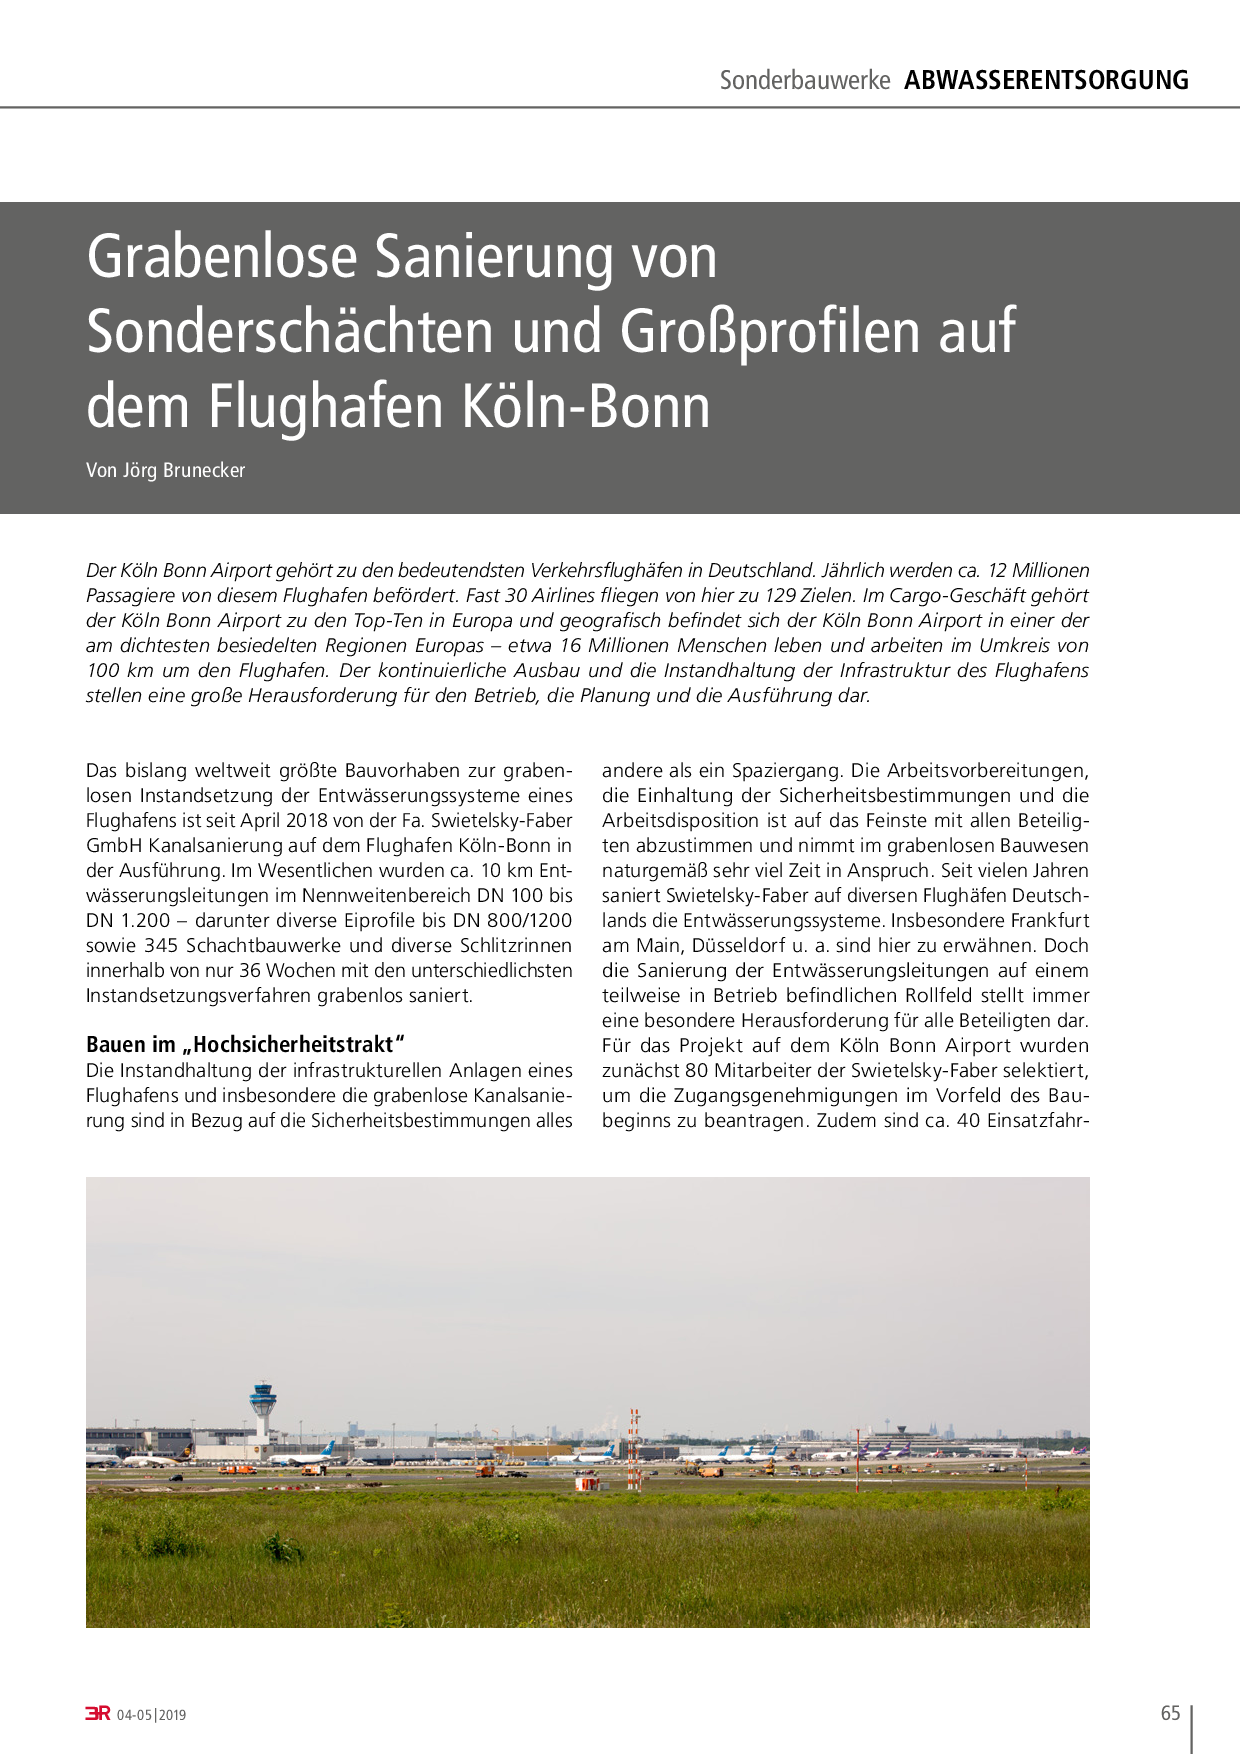 Grabenlose Sanierung von Sonderschächten und Großprofilen auf dem Flughafen Köln-Bonn